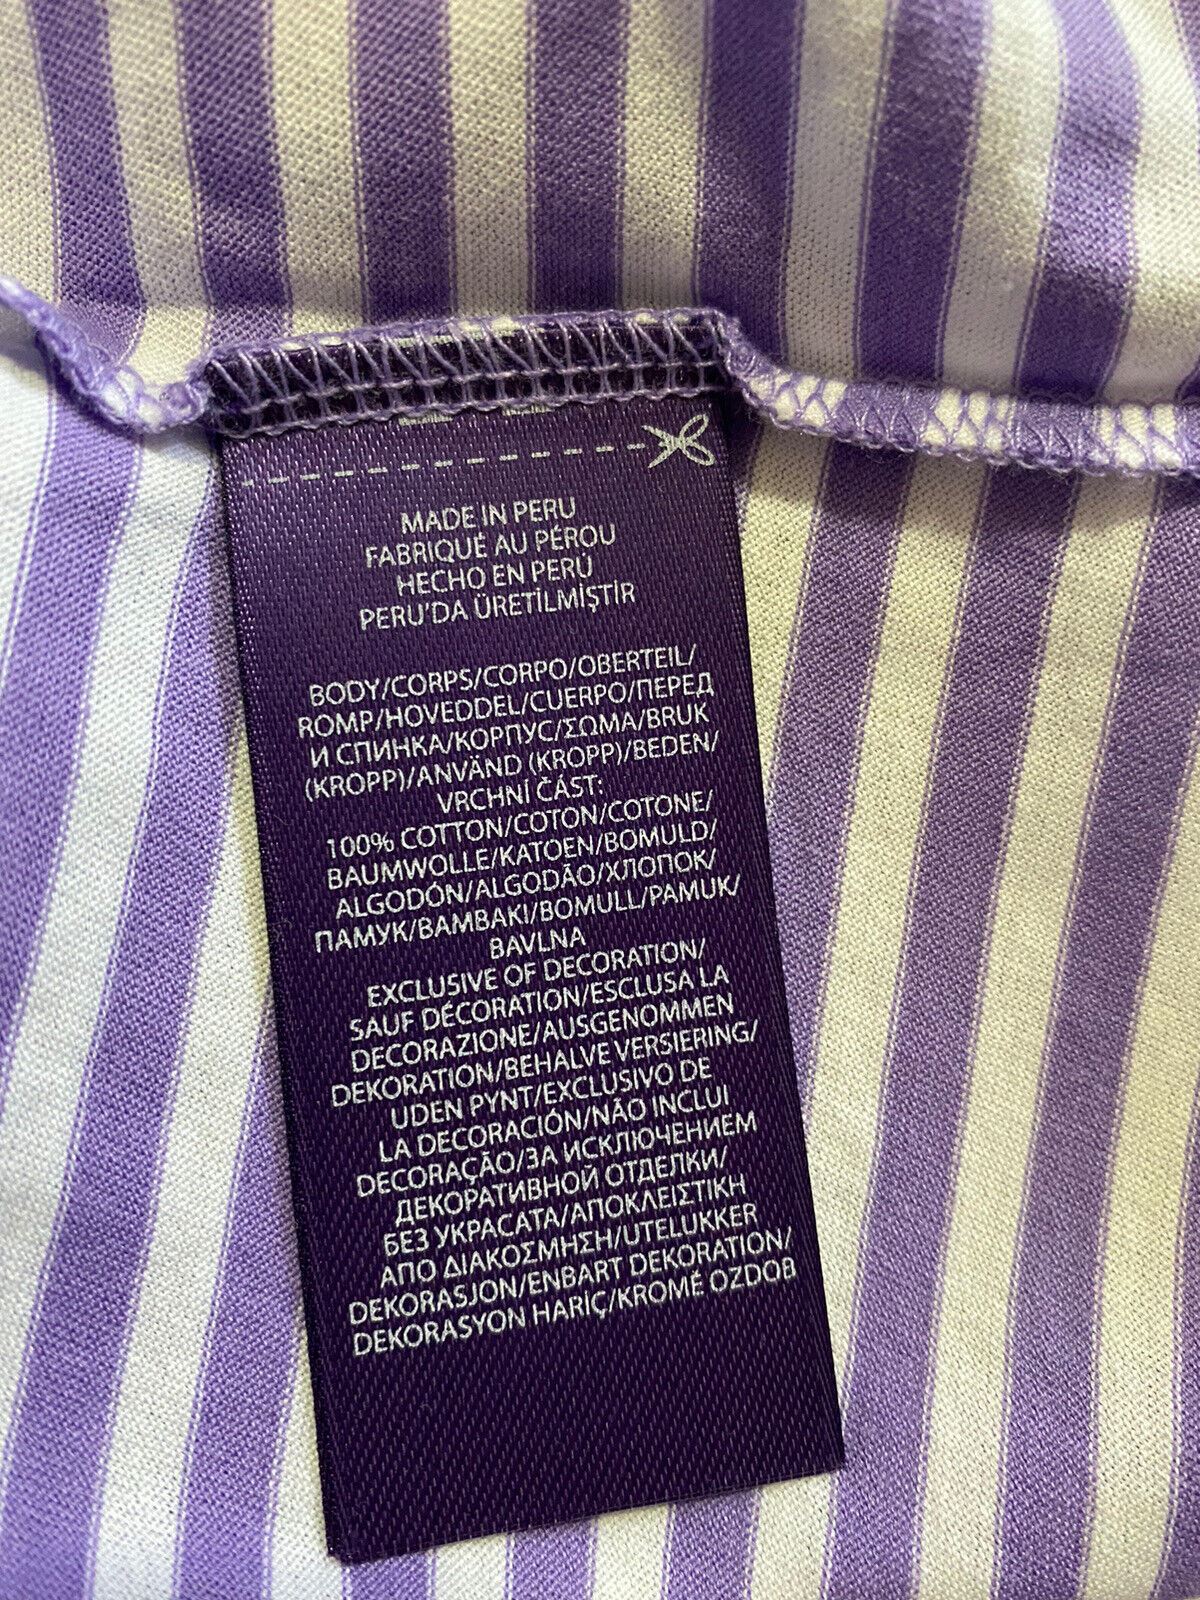 Мужская хлопковая футболка NWT Ralph Lauren Purple Label фиолетового/белого цвета S Италия